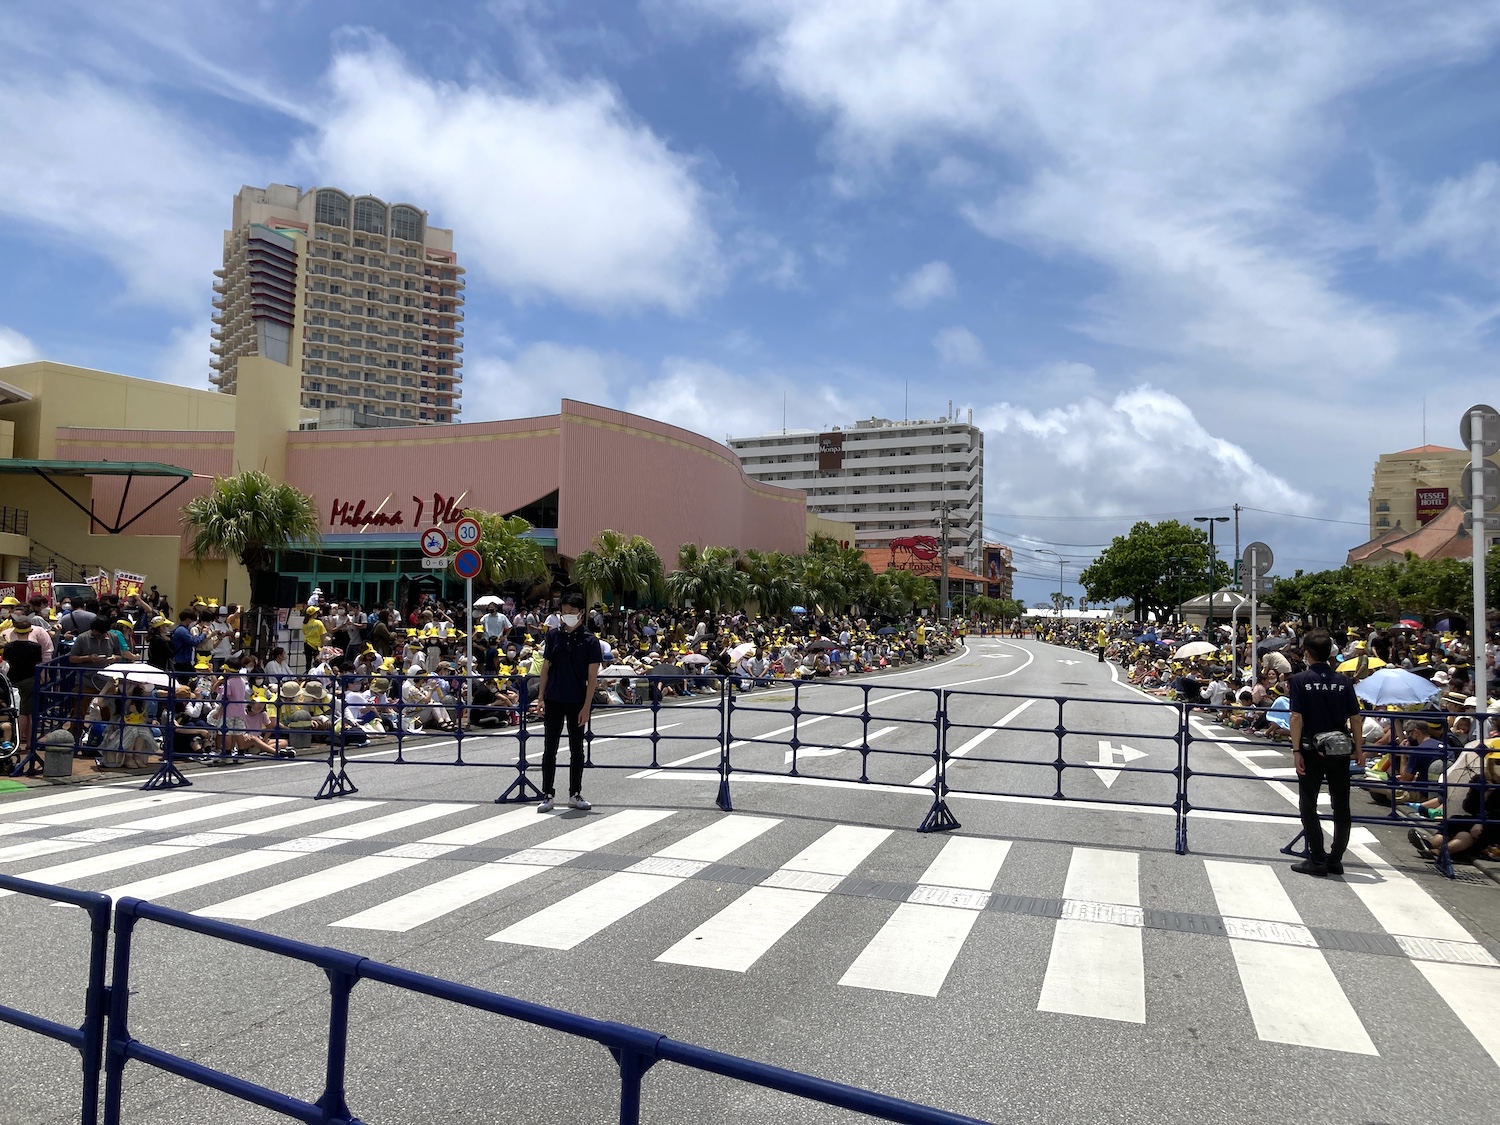 13時にパレード開始でしたが、30分前には既にこの状態。<br>日本人だけでなくアメリカ人など外国の方も数多く集まっていました。<br>ポケモンすげー！